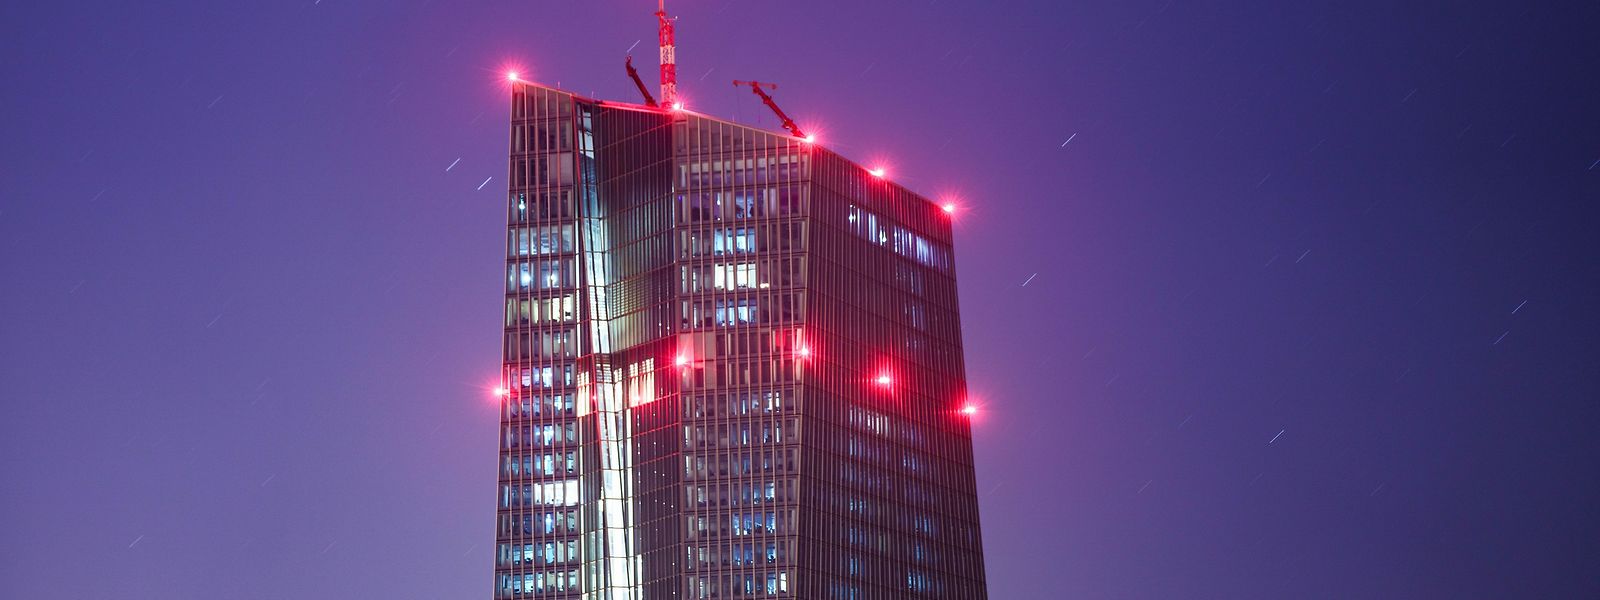 Die Europäische Zentralbank hat ihren Sitz in Frankfurt.